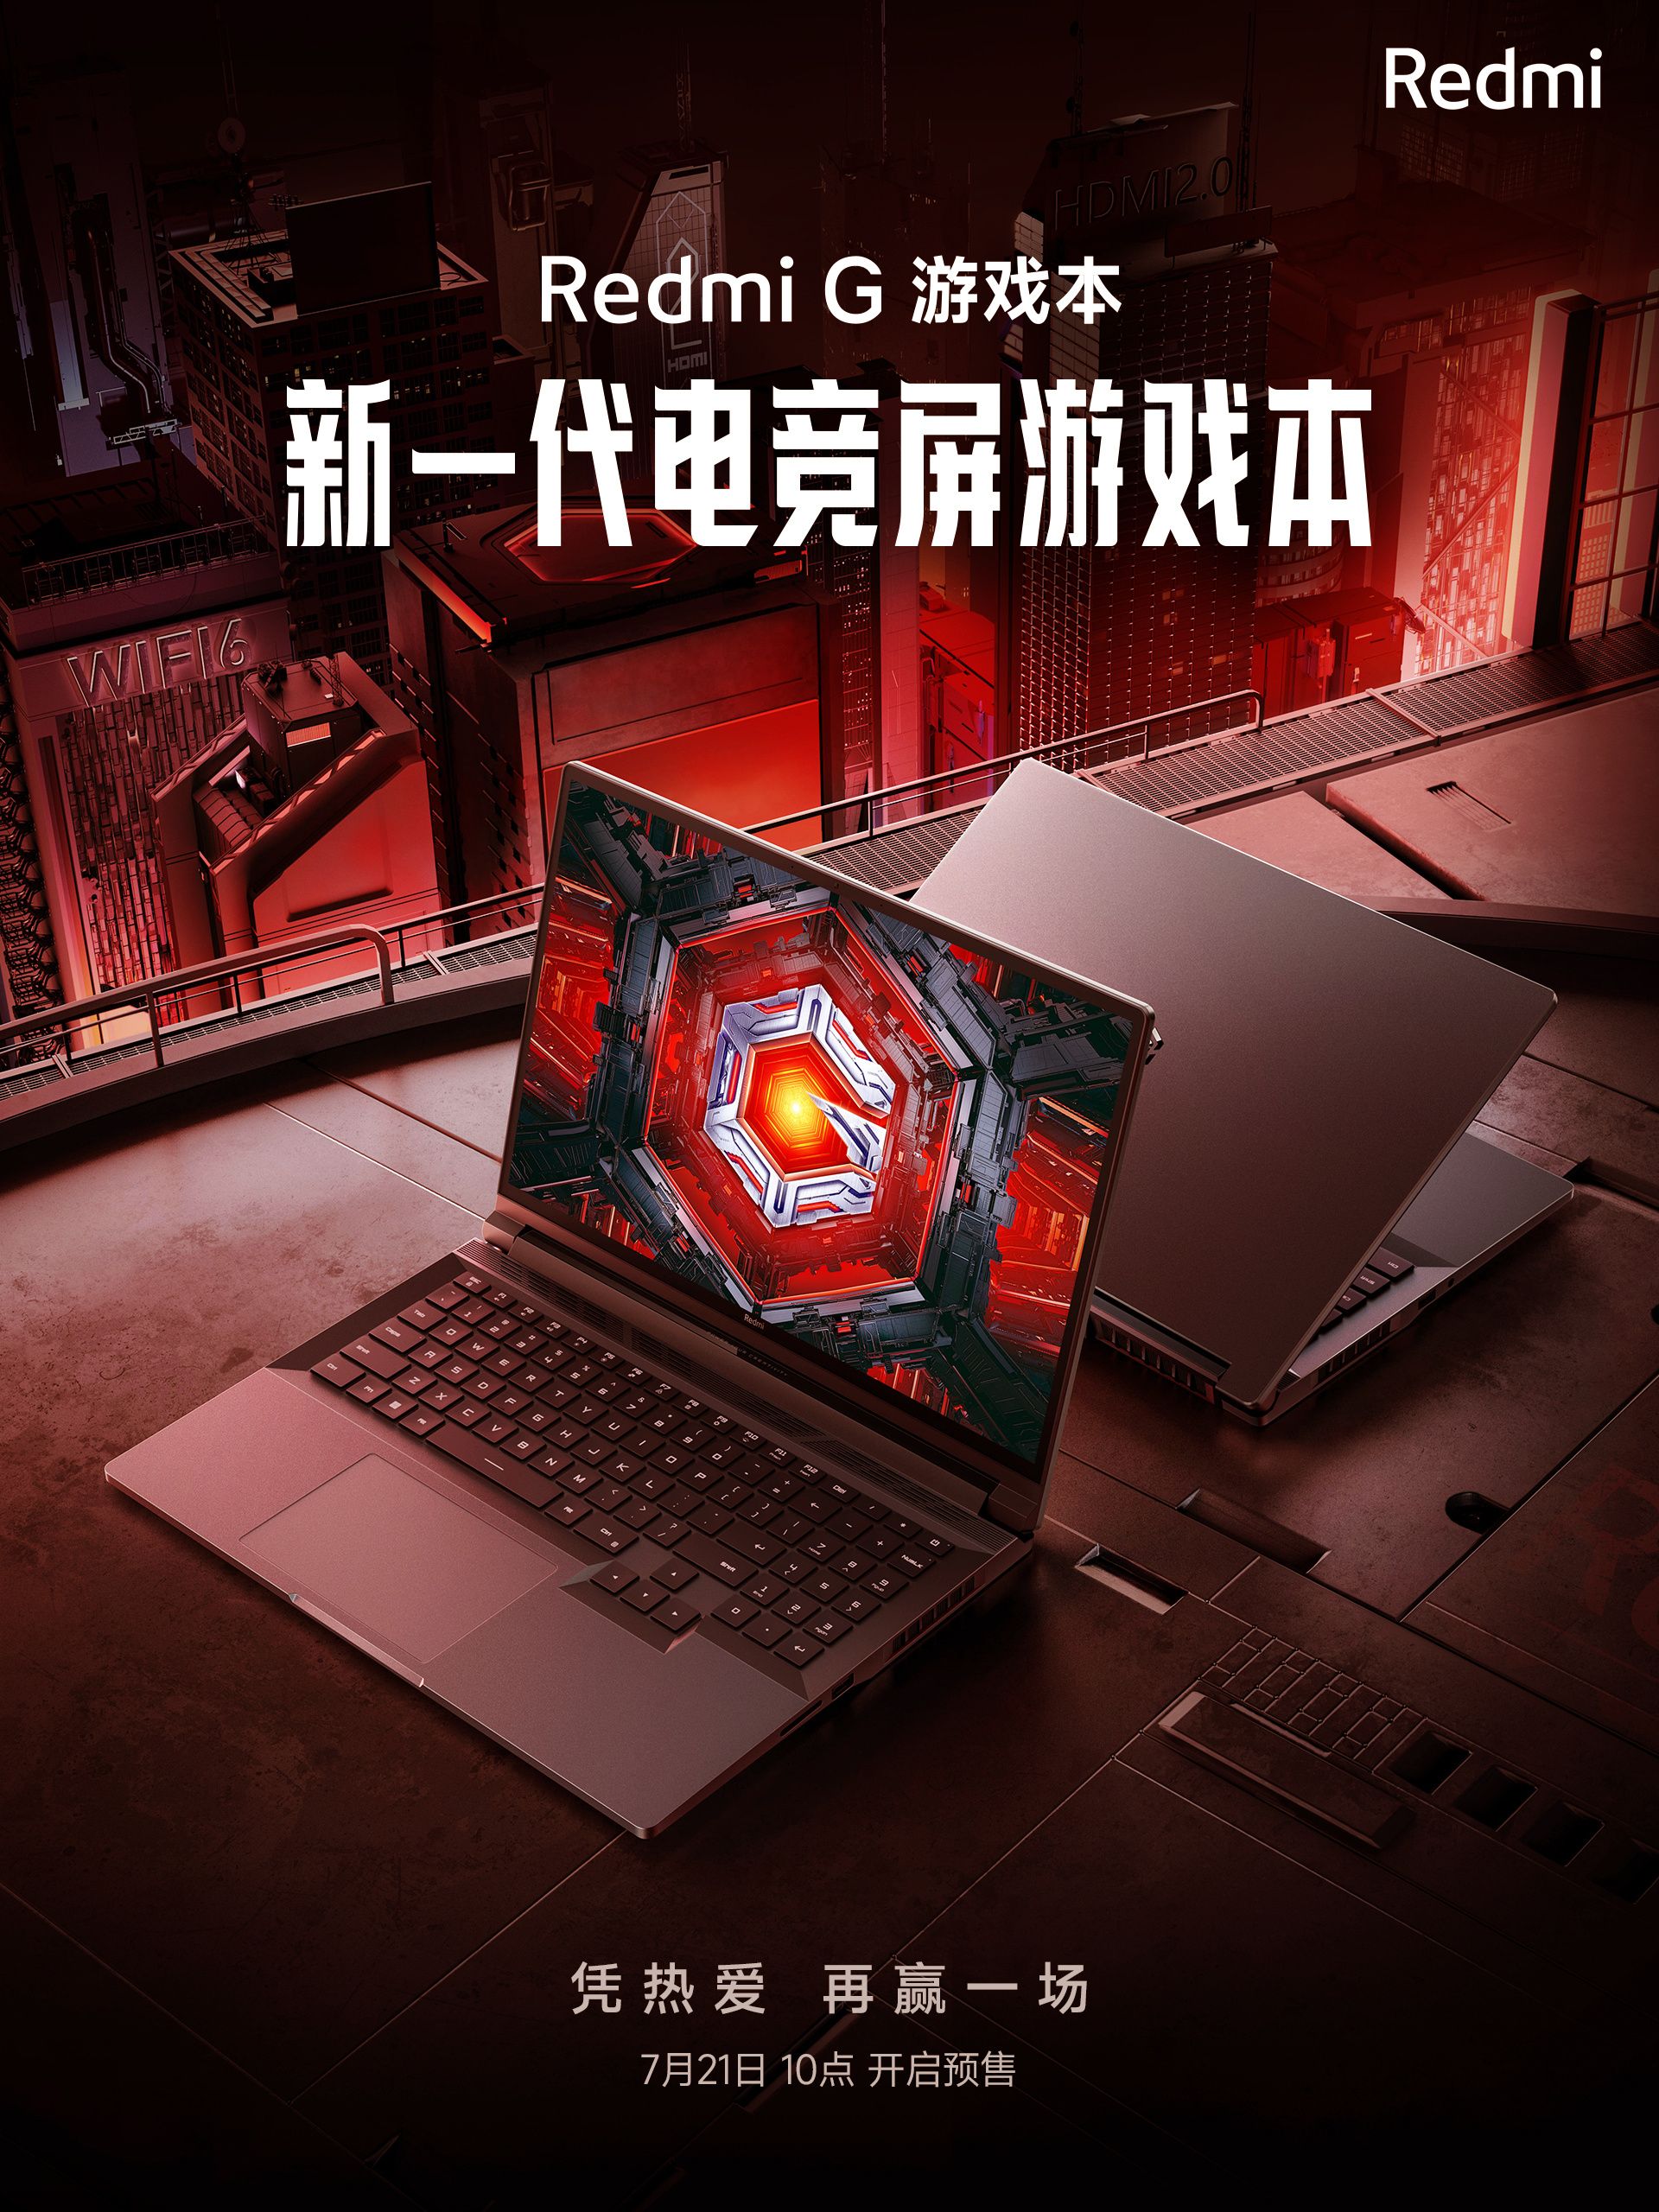 laptop-gaming-xiaomi-redmi-g-2022